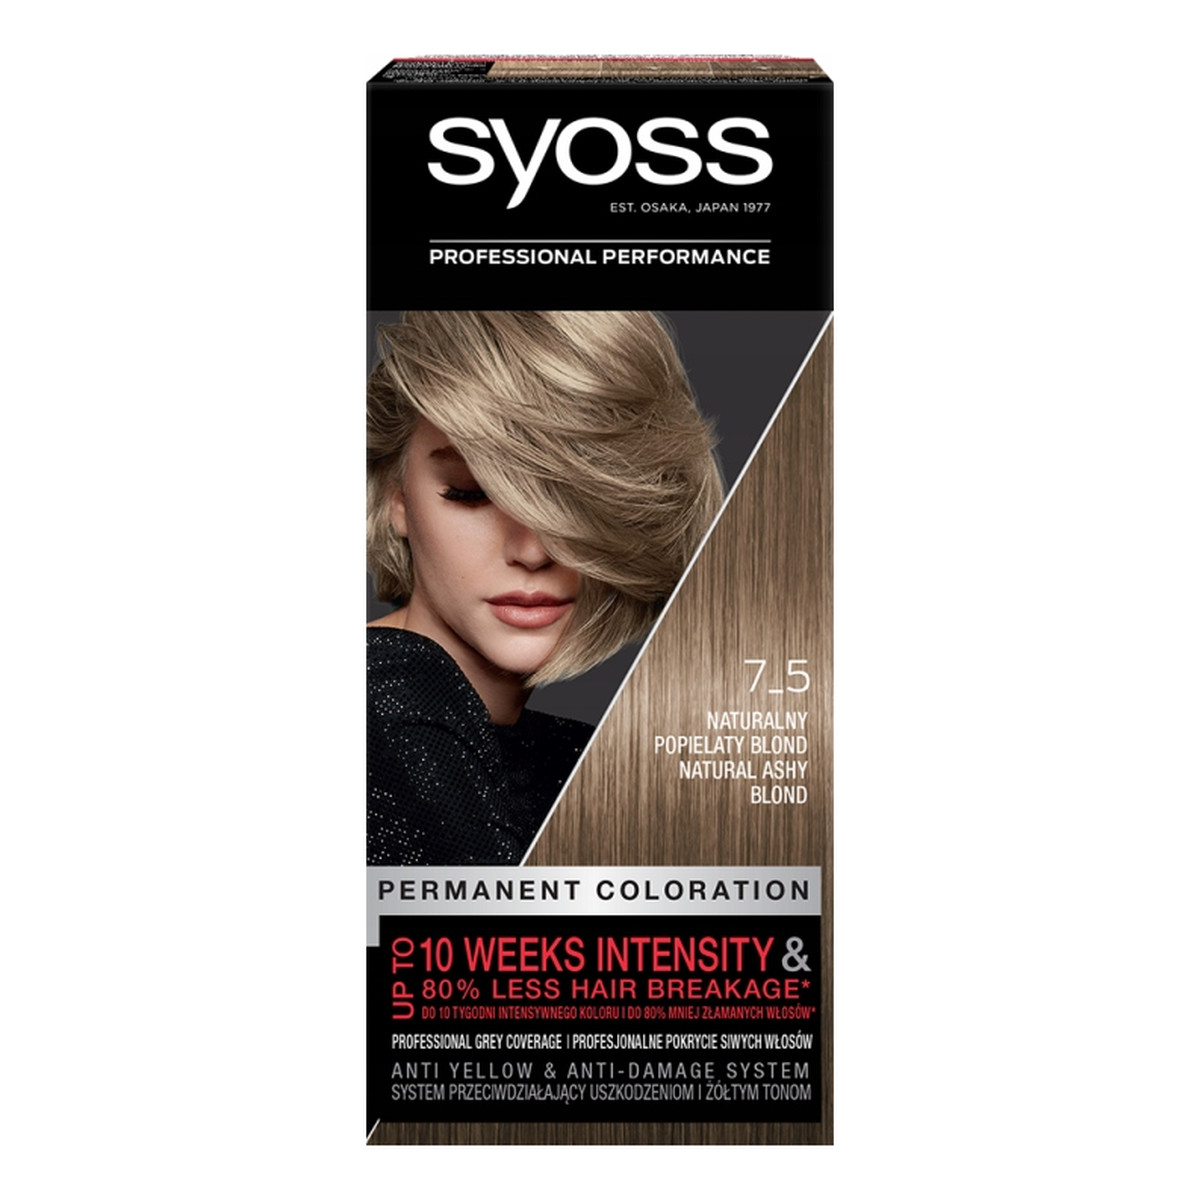 Syoss Permanent Coloration farba do włosów trwale koloryzująca 7_5 naturalny popielaty blond